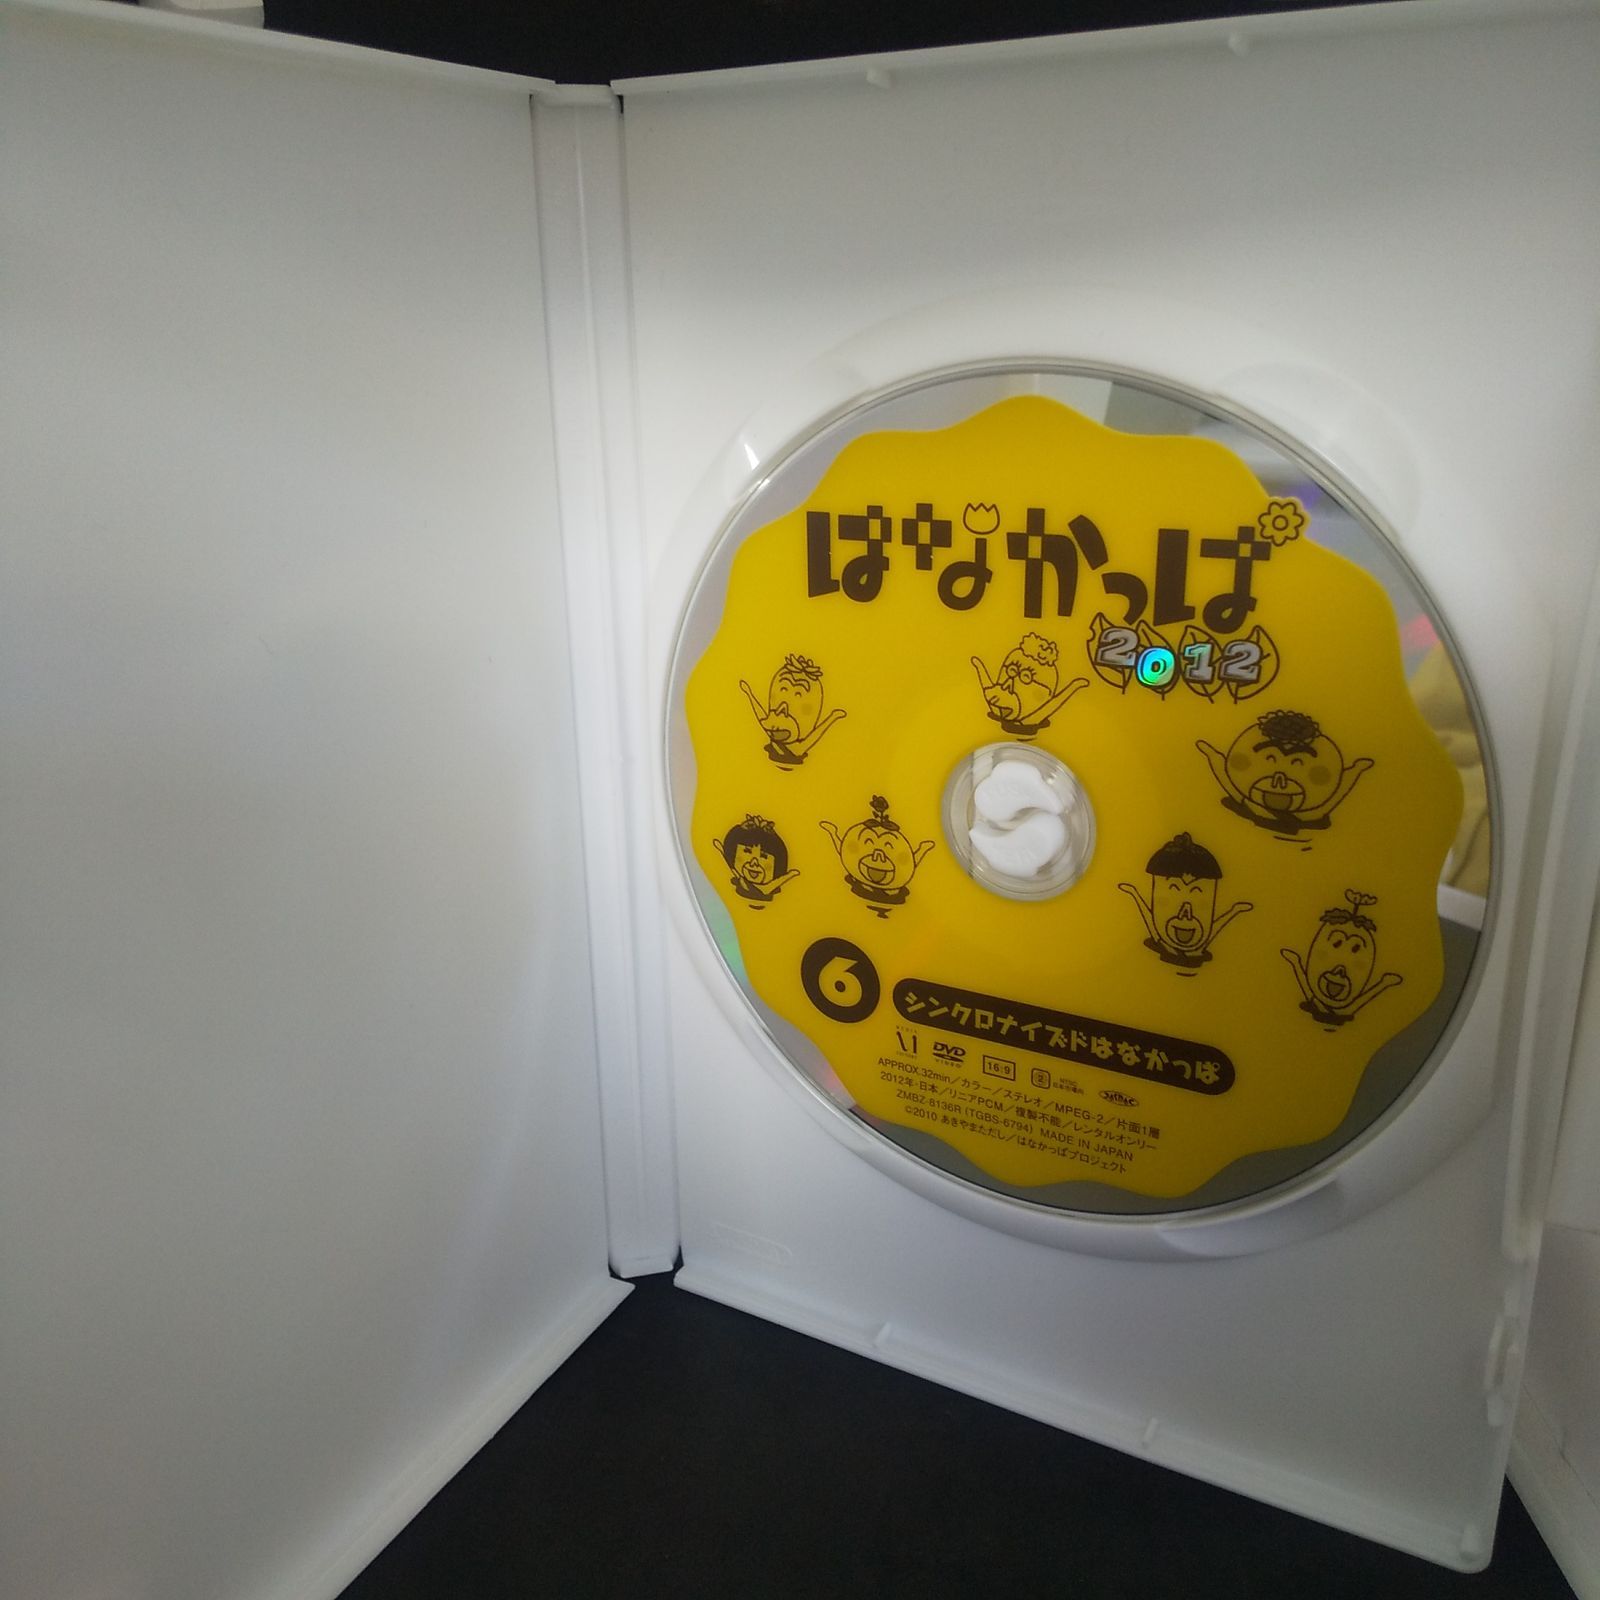 はなかっぱ 2012 6 レンタル専用 中古 DVD ケース付き - メルカリ